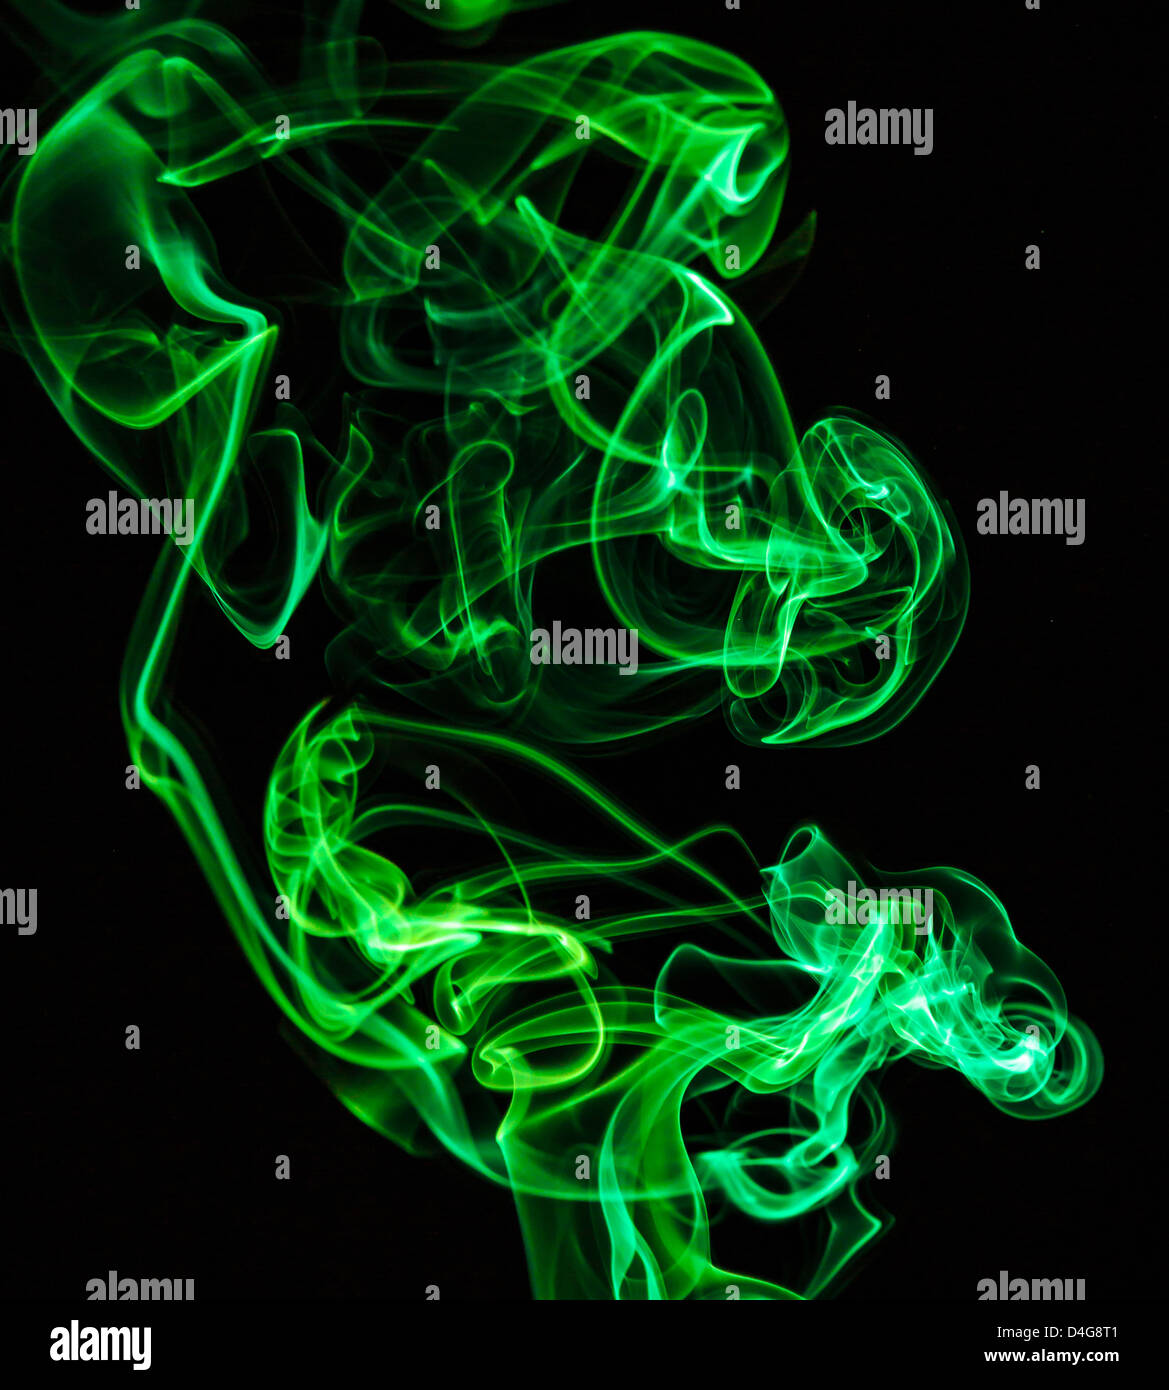 Rauch von grünes Licht bilden eine abstrakte Figur gemalt Stockfoto